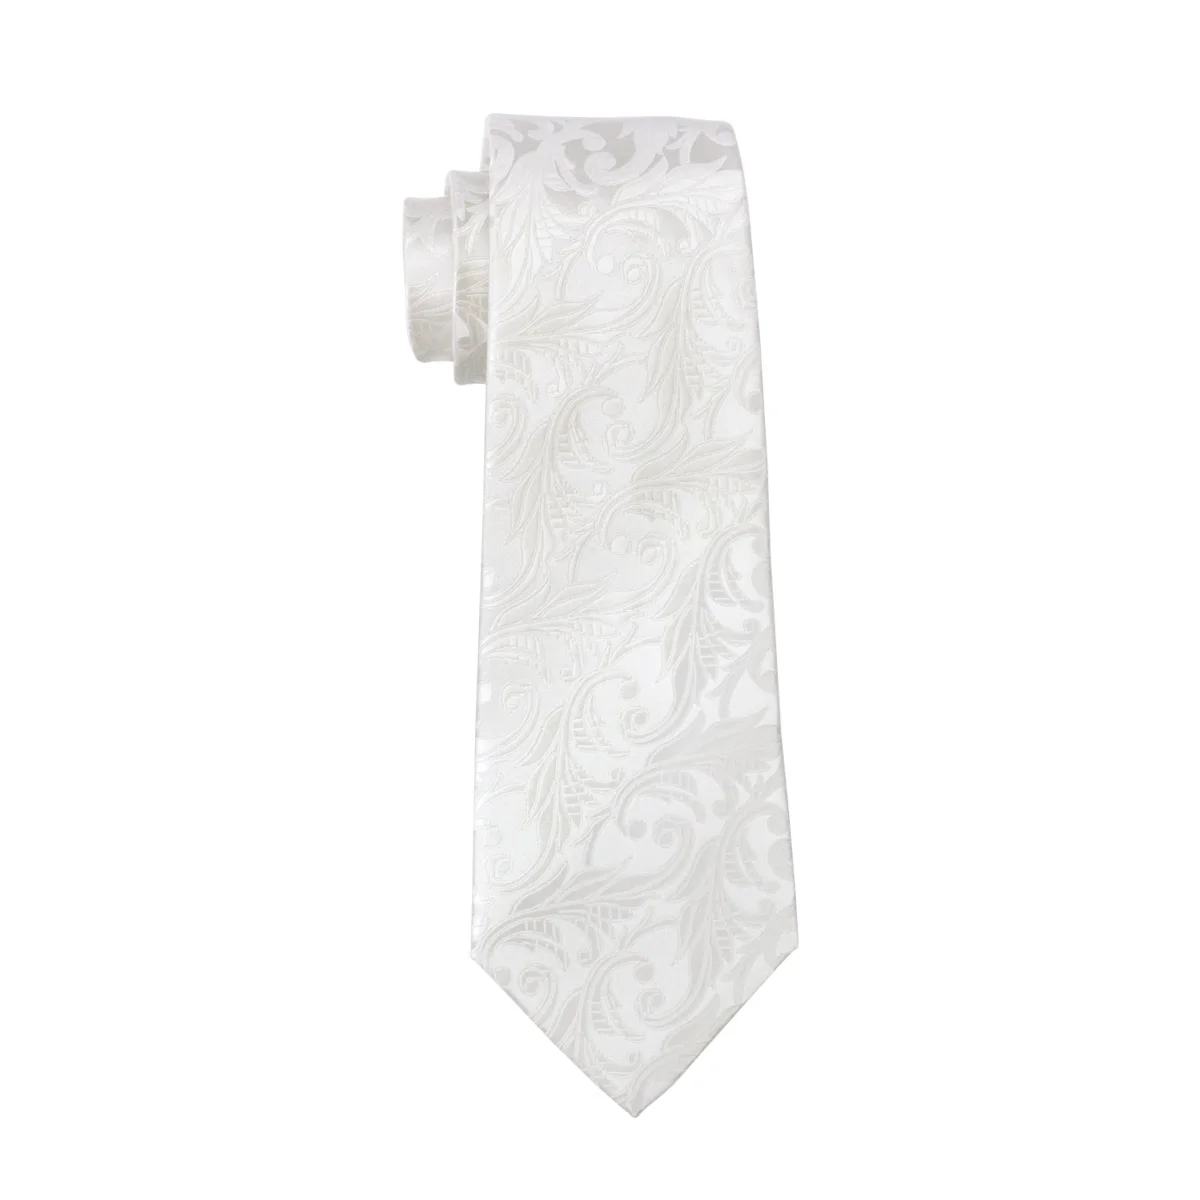 FA-1163 Барри. Ван мужской галстук Классический белый цветочный Шелковый жаккардовый галстук носовой платок запонки Набор для бизнеса свадьбы